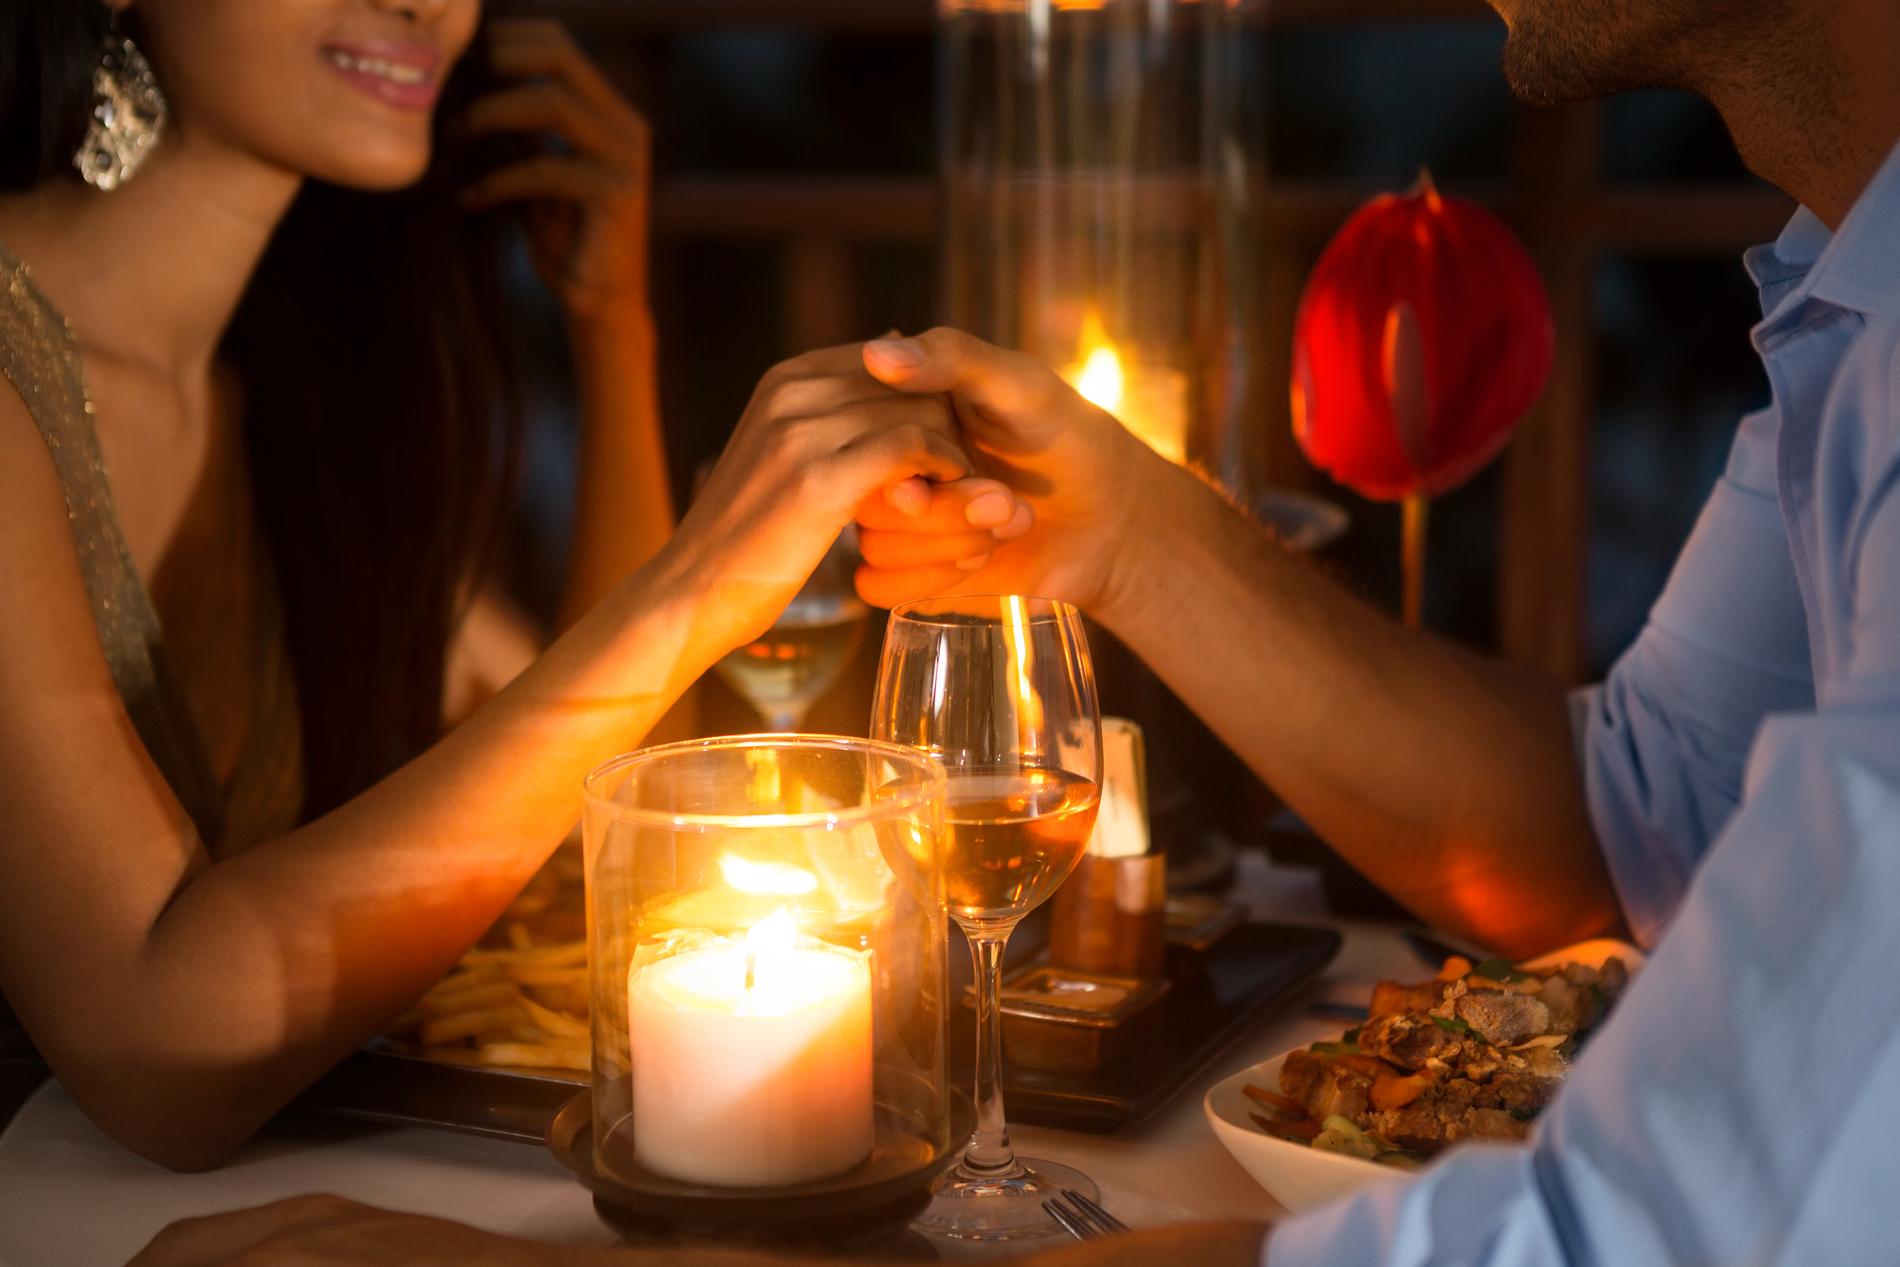 Nästan hälften av personerna i undersökningen tycker att en romantisk middag kan hjälpa romantiken på traven. 